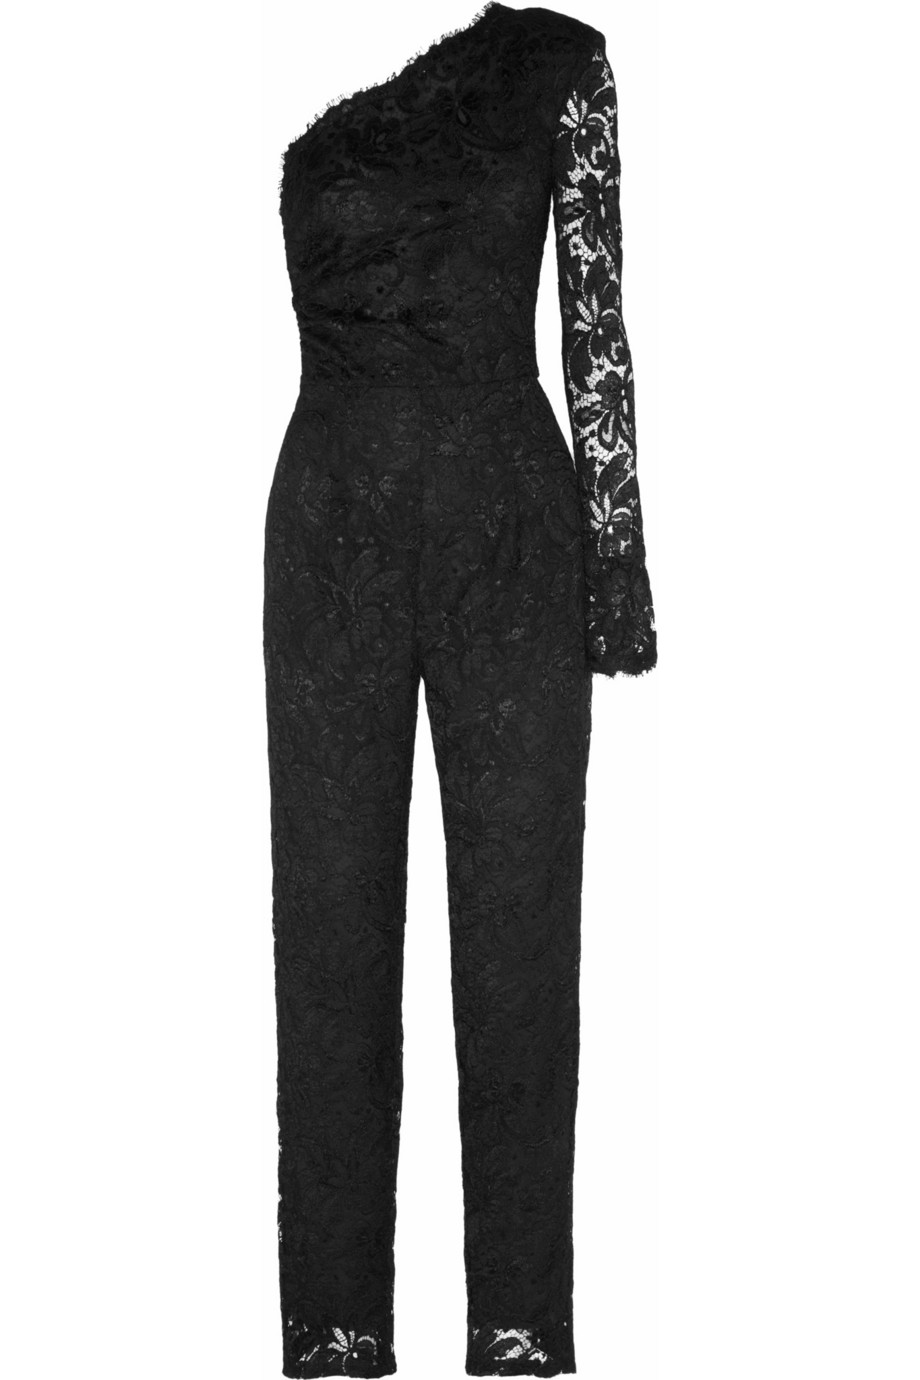 Lyst - Emilio Pucci Oneshoulder Lace Jumpsuit in Black